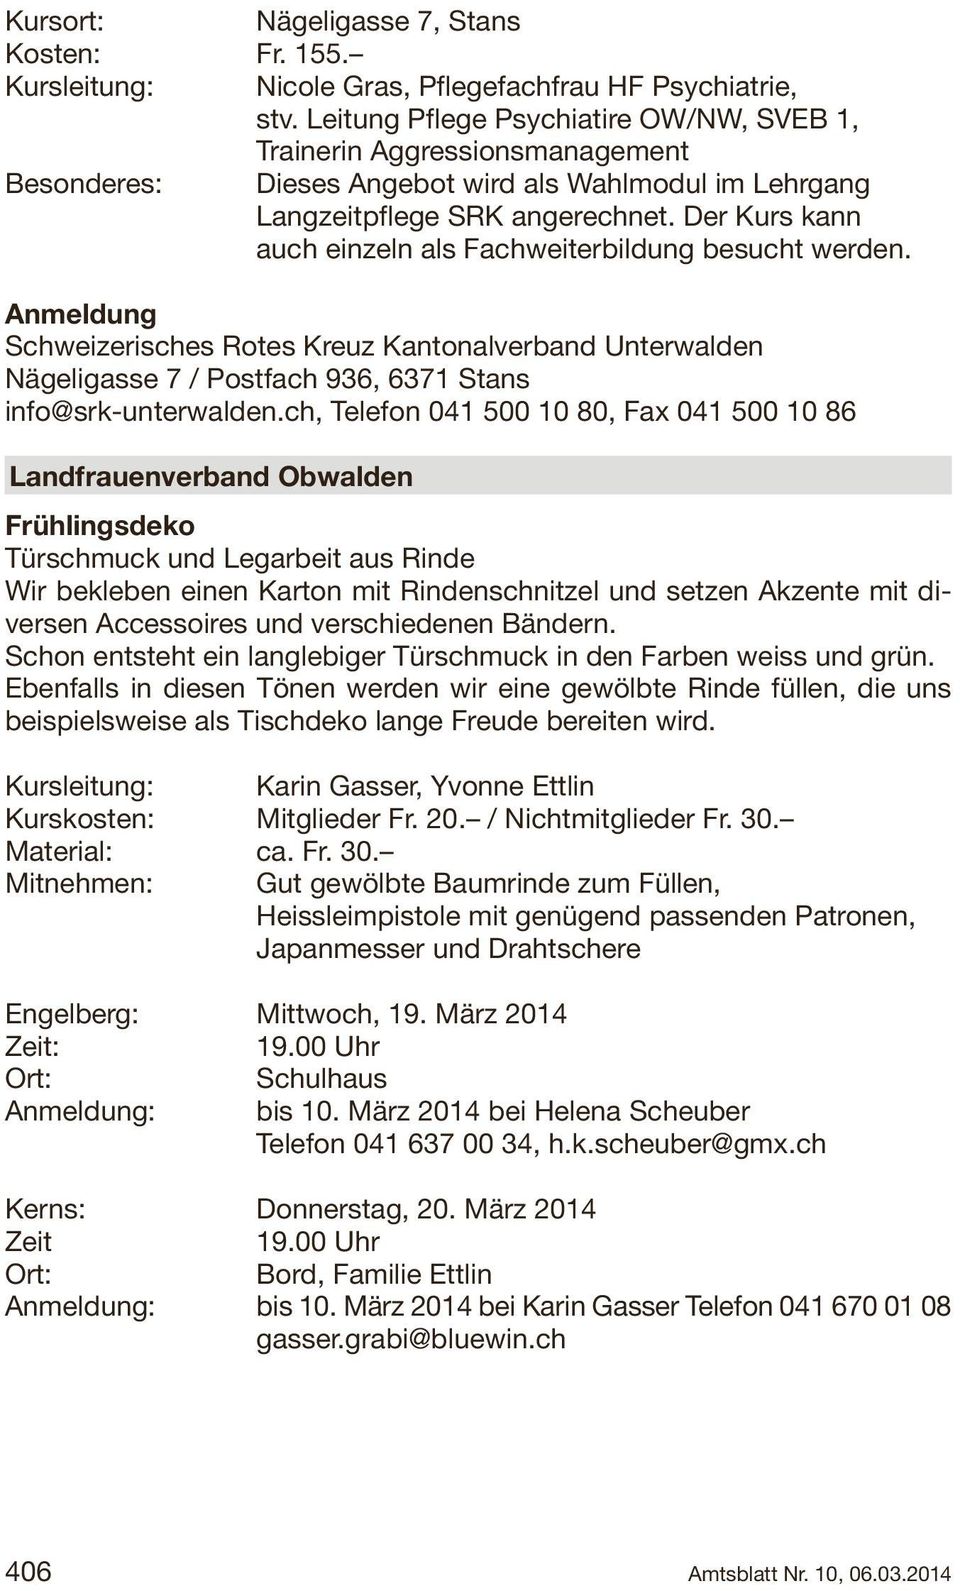 Der Kurs kann auch einzeln als Fachweiterbildung besucht werden. Anmeldung Schweizerisches Rotes Kreuz Kantonalverband Unterwalden Nägeligasse 7 / Postfach 936, 6371 Stans info@srk-unterwalden.